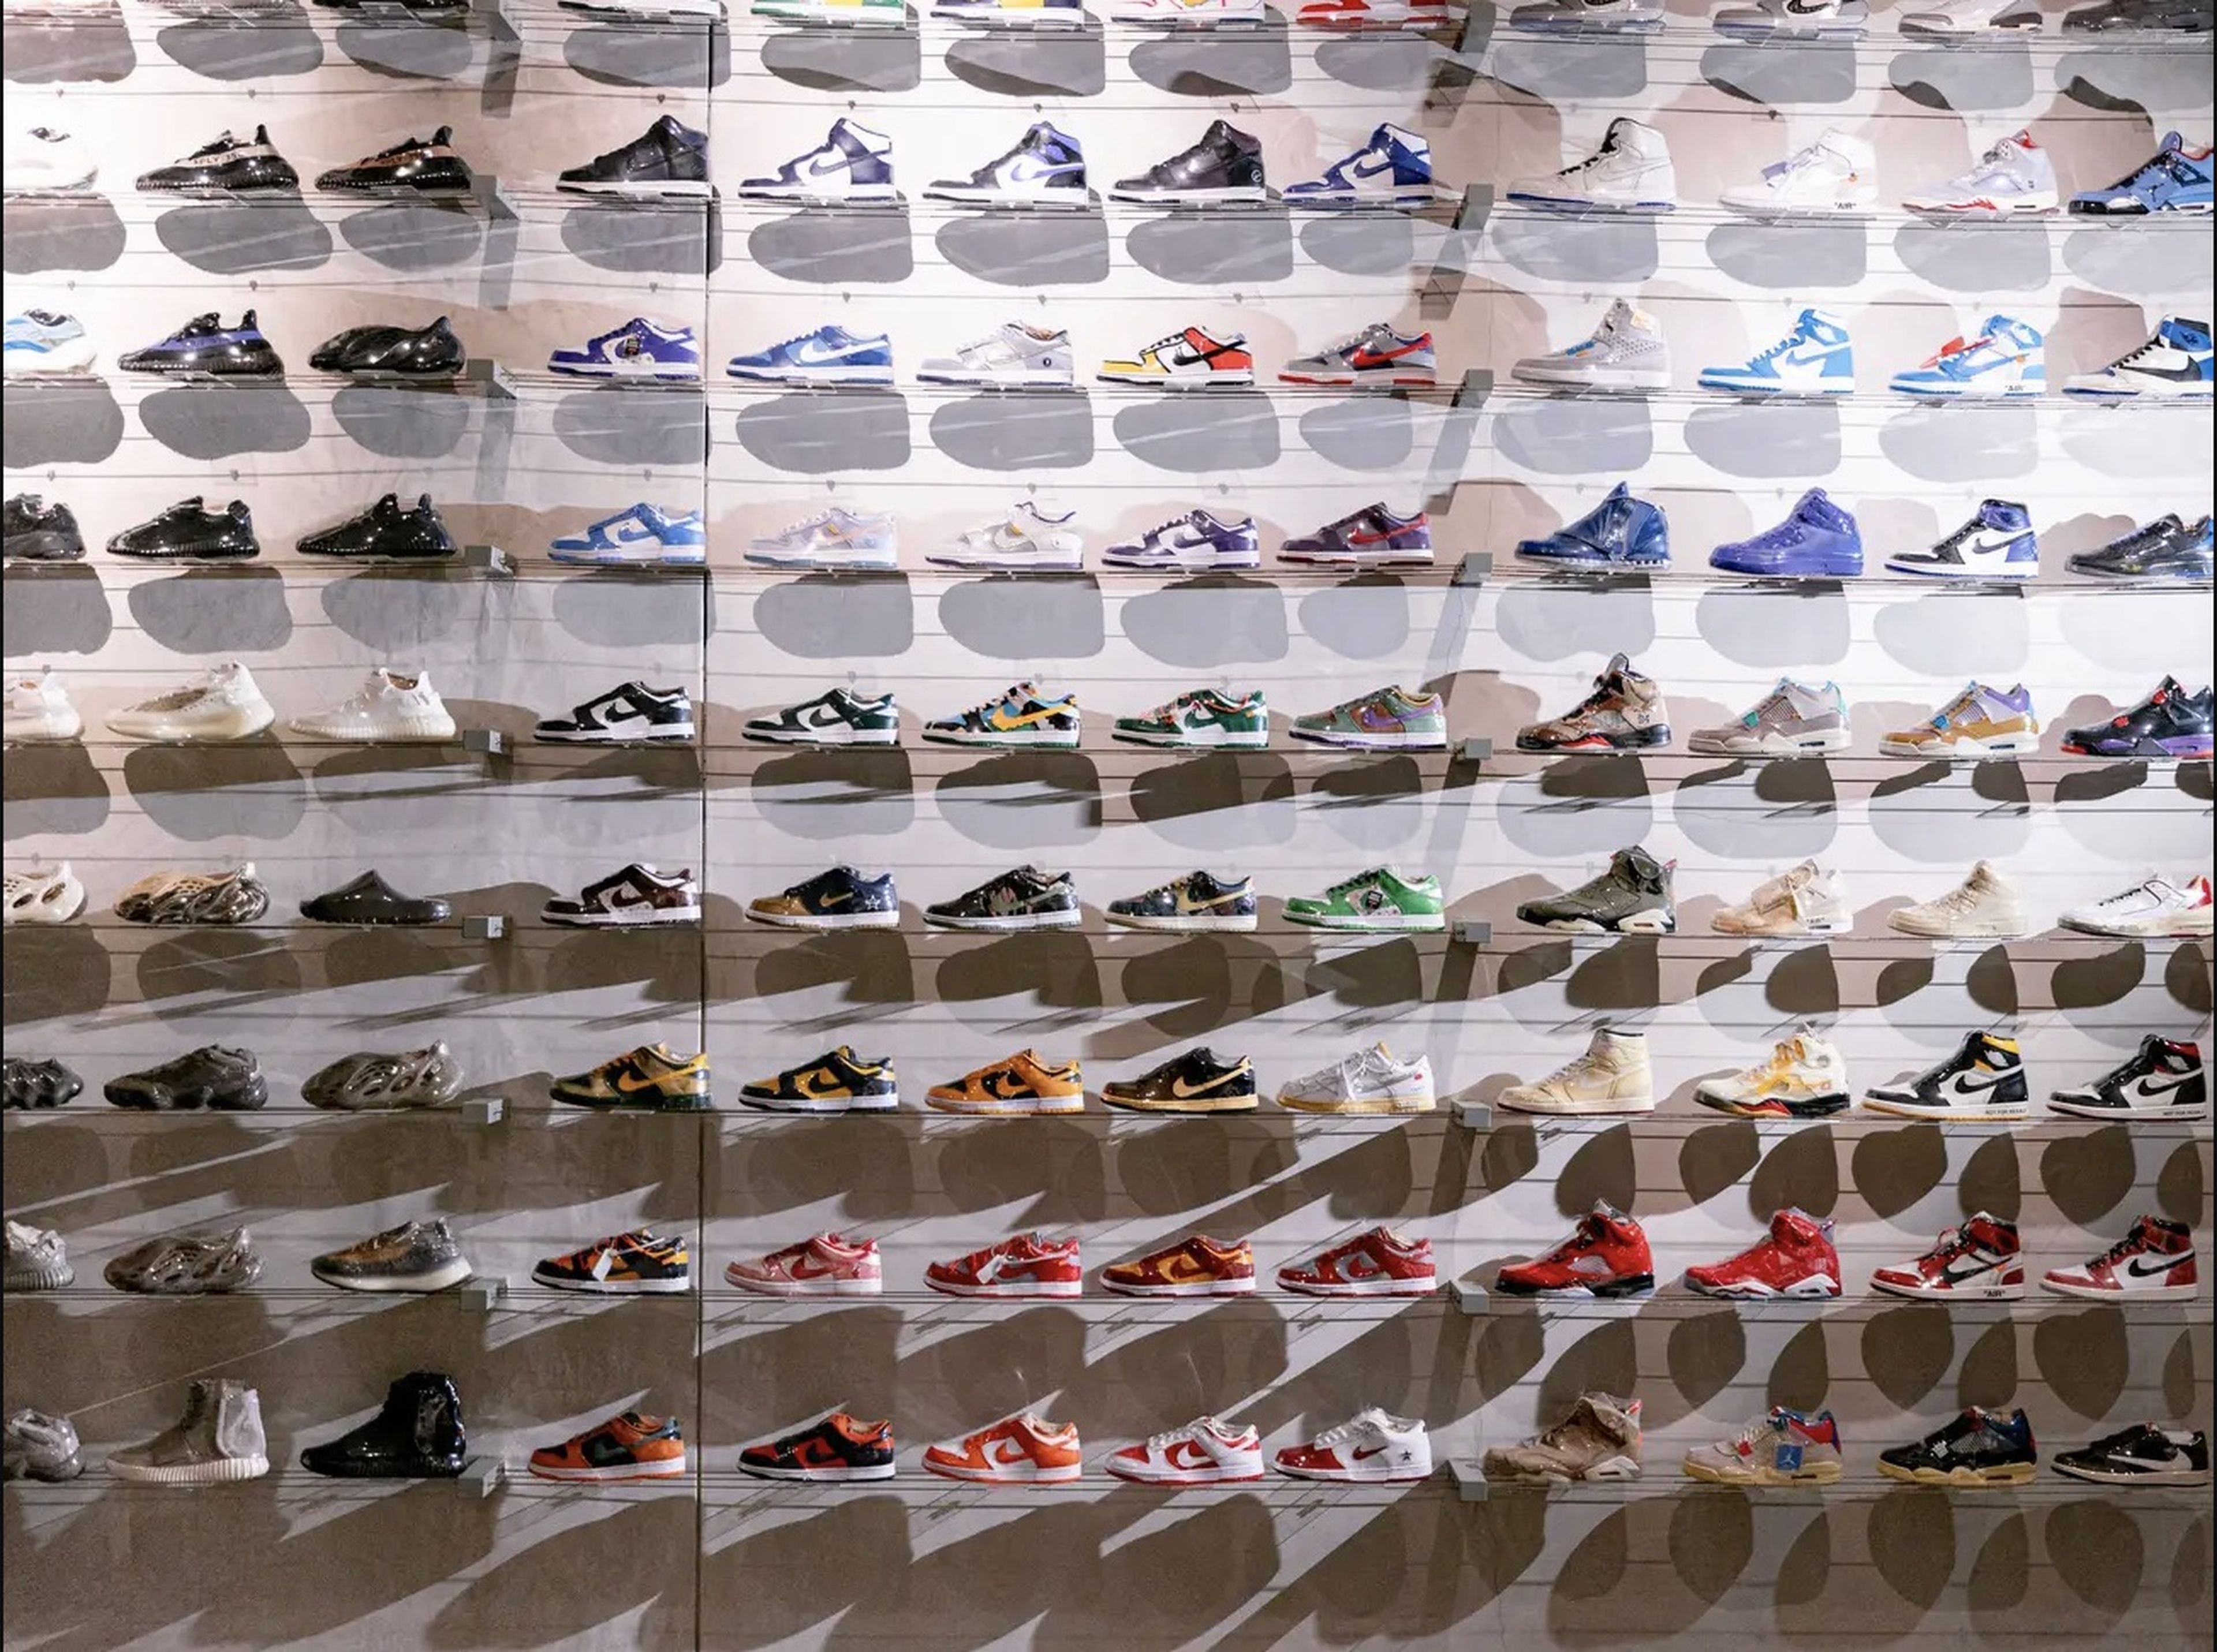 préstamo que te diviertas Donación Por qué las zapatillas Nike de mayor éxito dañan al medioambiente |  Business Insider España